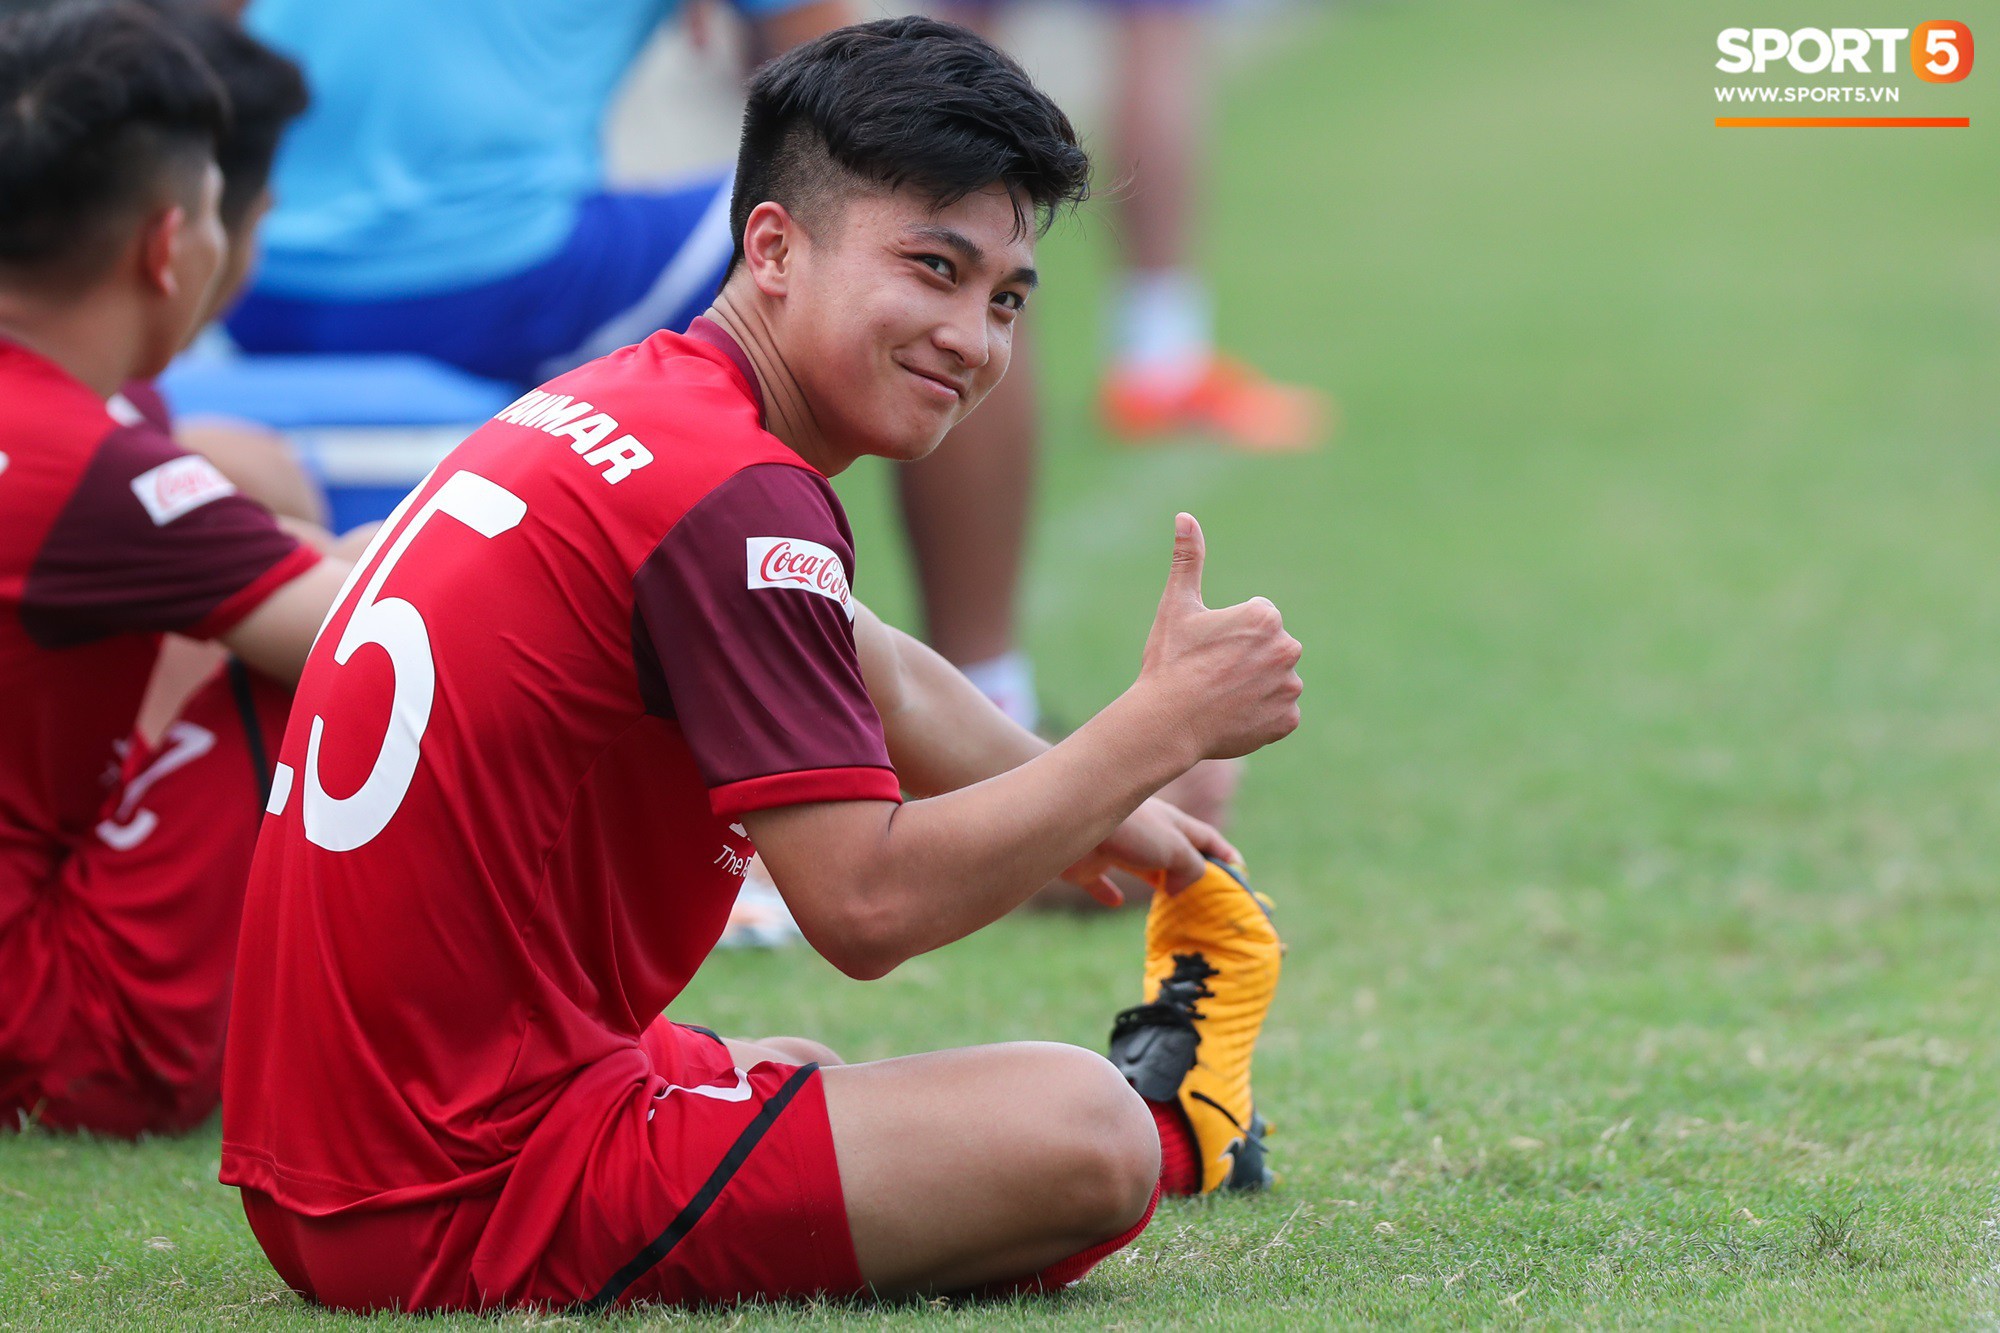 Bùi Tiến Dũng xuất hiện với cổ tay băng bó, trầm tư làm khán giả trong trận đấu tập của U23 Việt Nam - Ảnh 9.